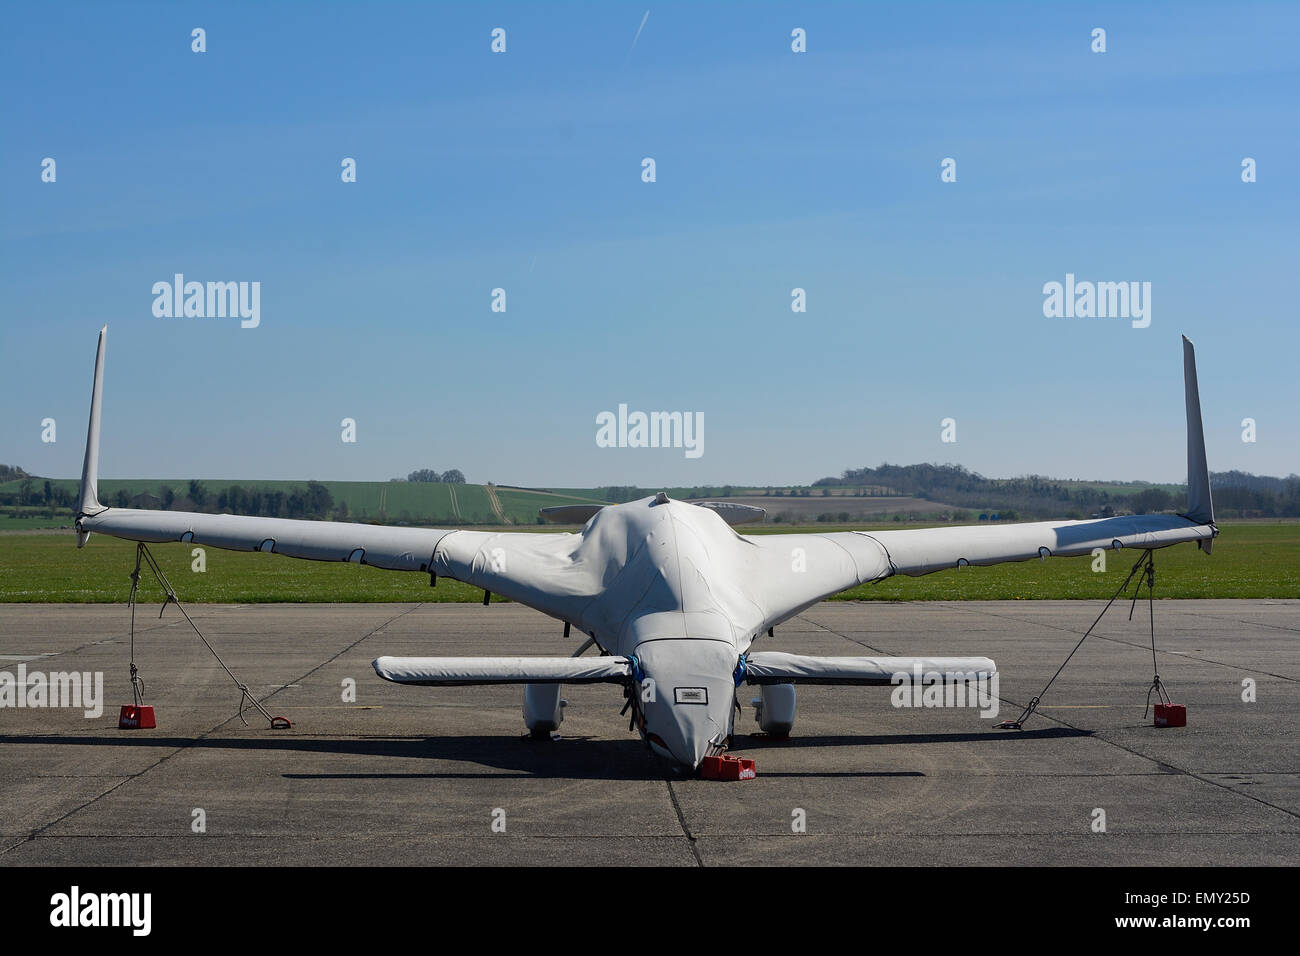 Futuristische delta wing Rutan Vari-Eze Flugzeuge am Flugplatz Duxford, England geparkt Stockfoto